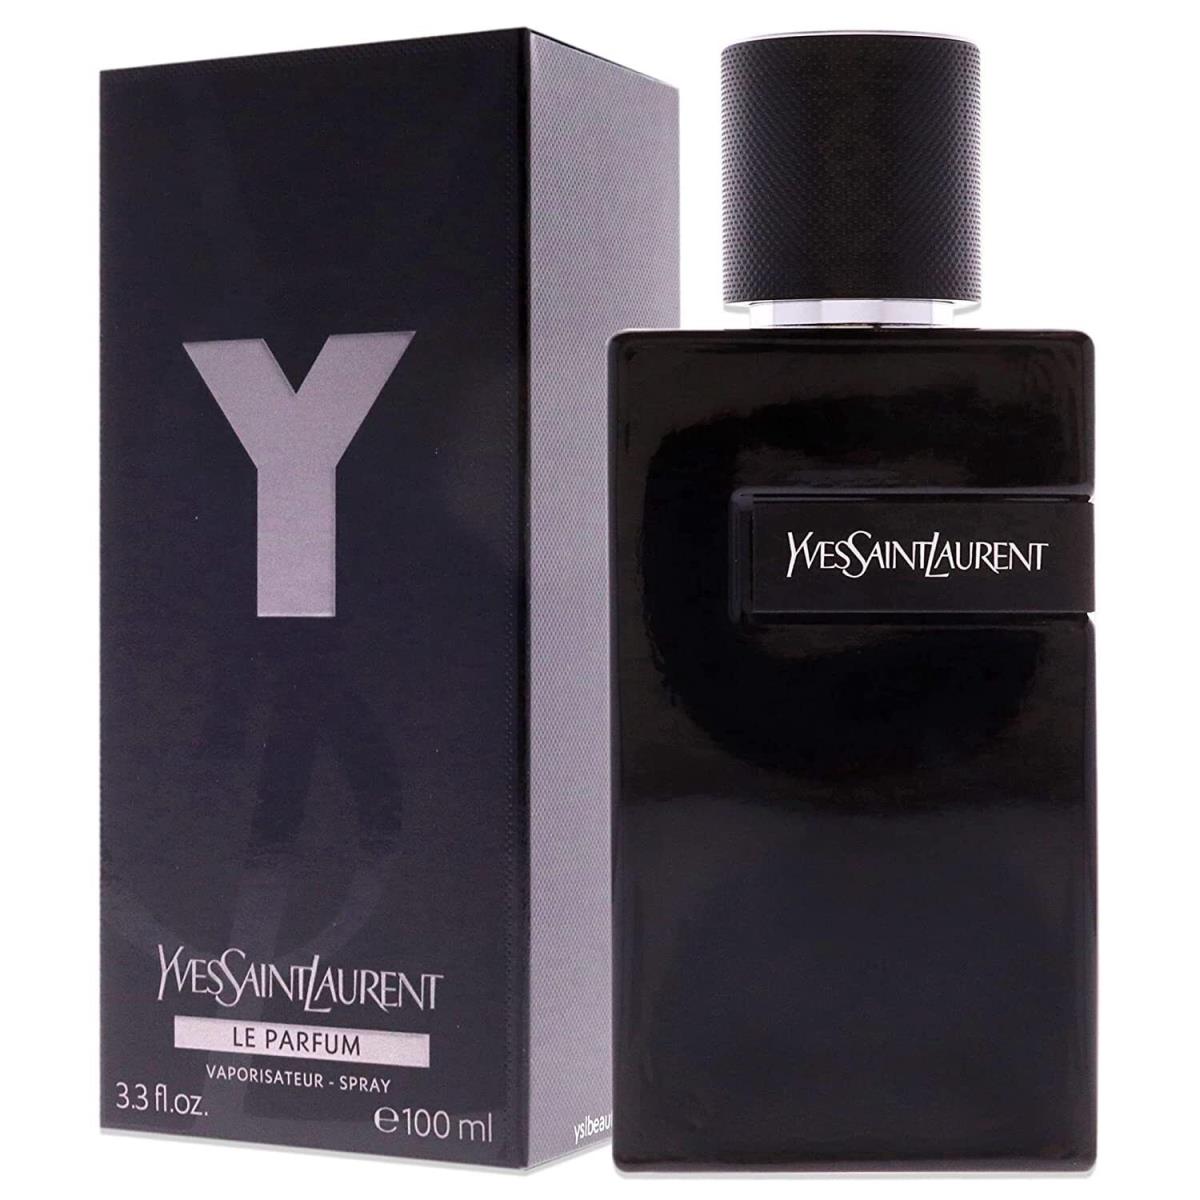 Y Le Parfum by Yves Saint Laurent Eau De Parfum Spray 3.3 oz For Men